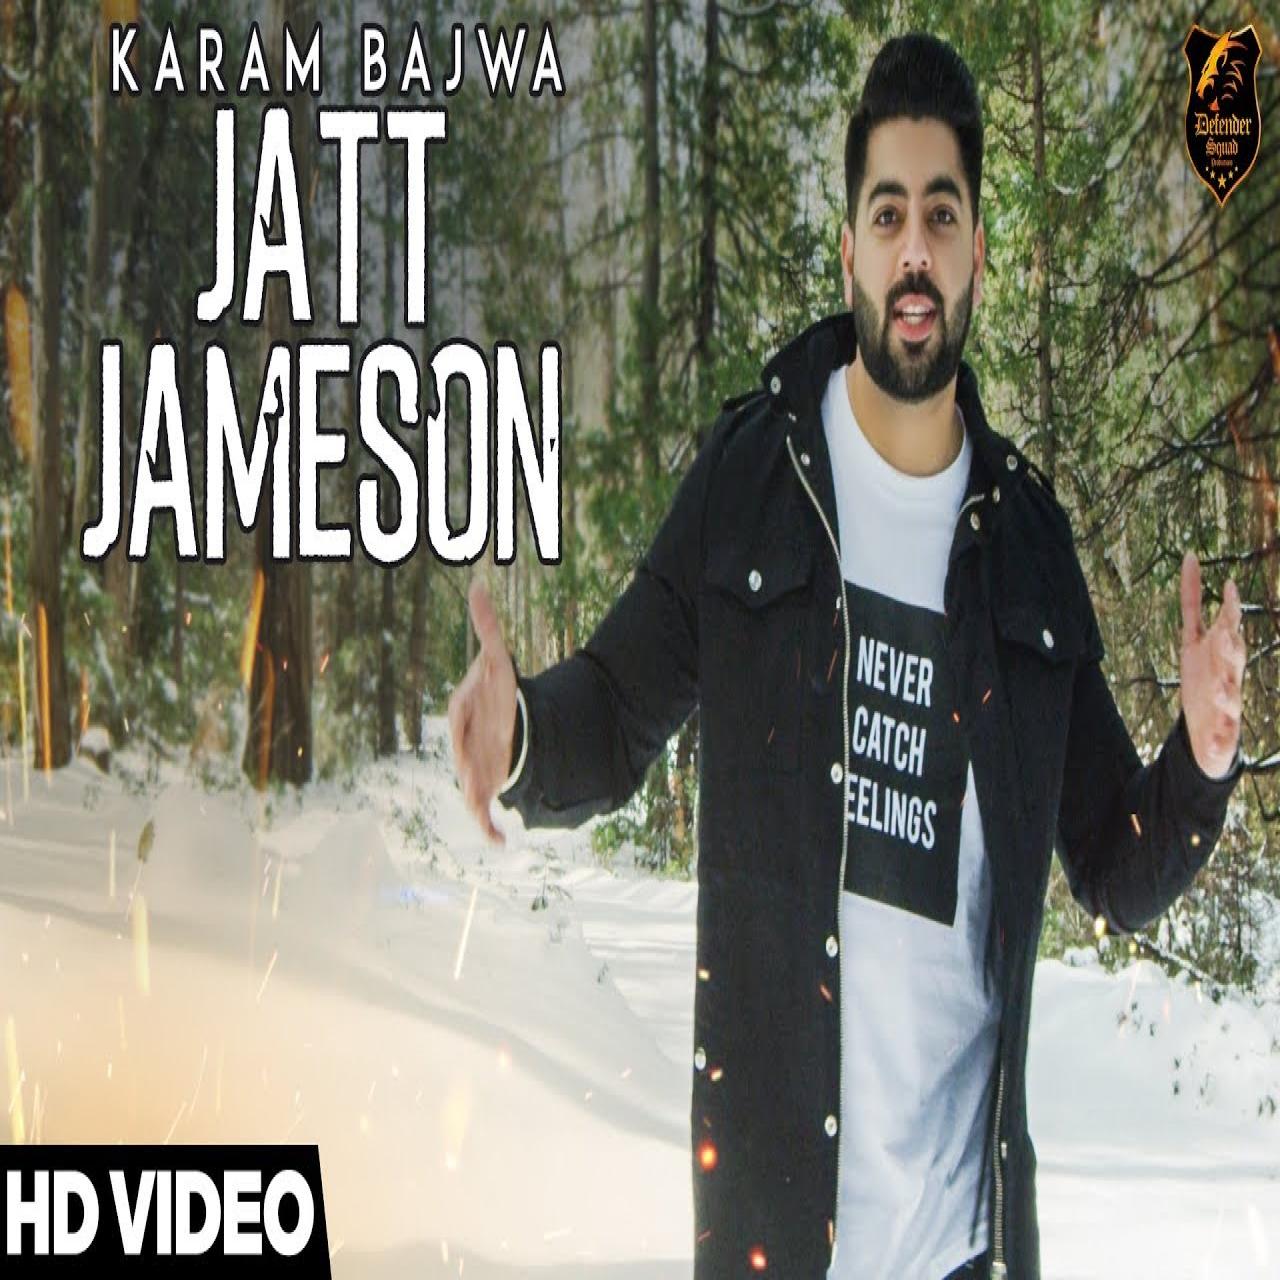 Karam Bajwa Jatt Jameson